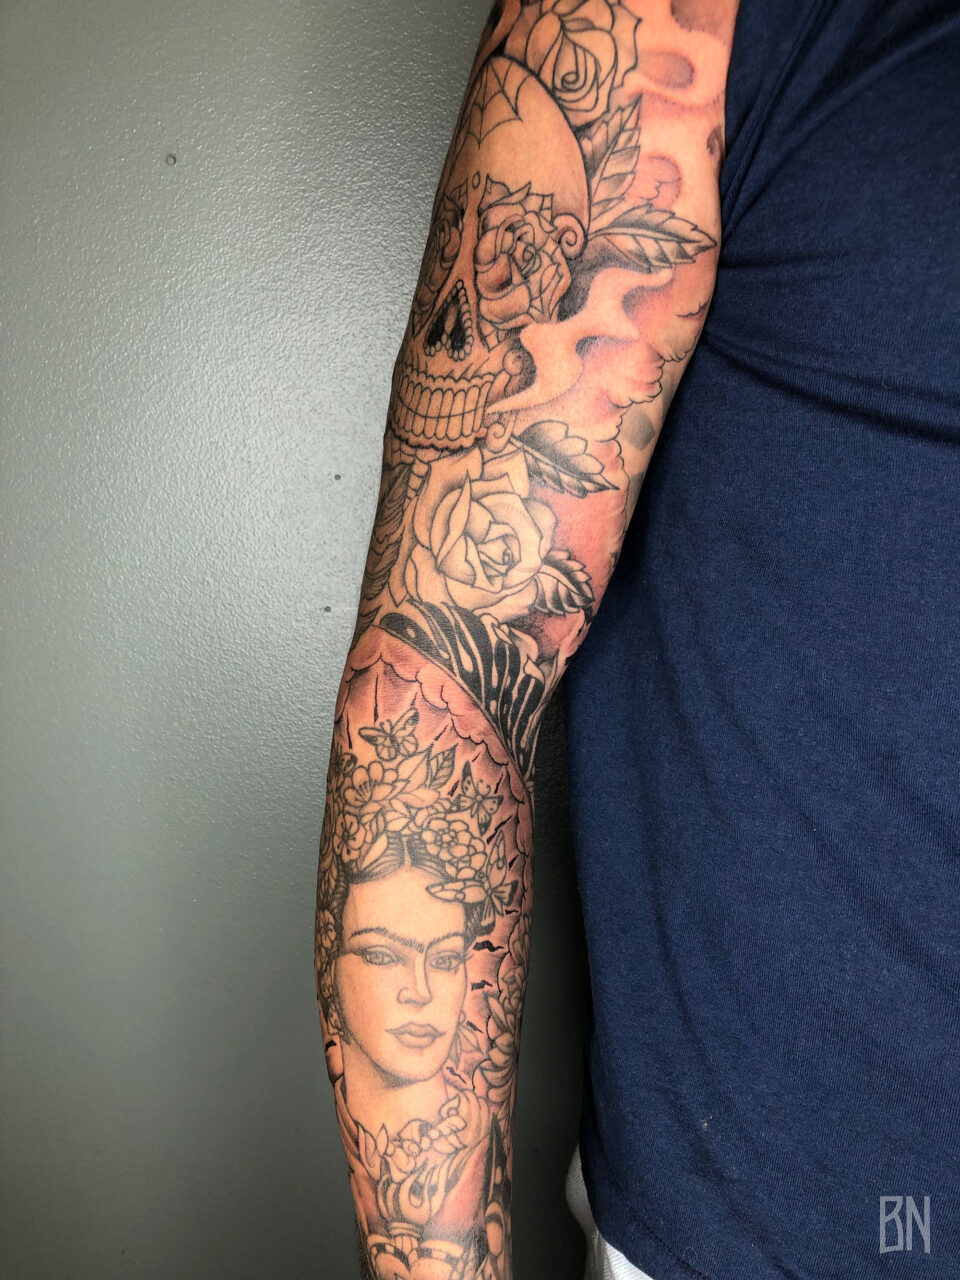 Veenom full sleeve tattoo